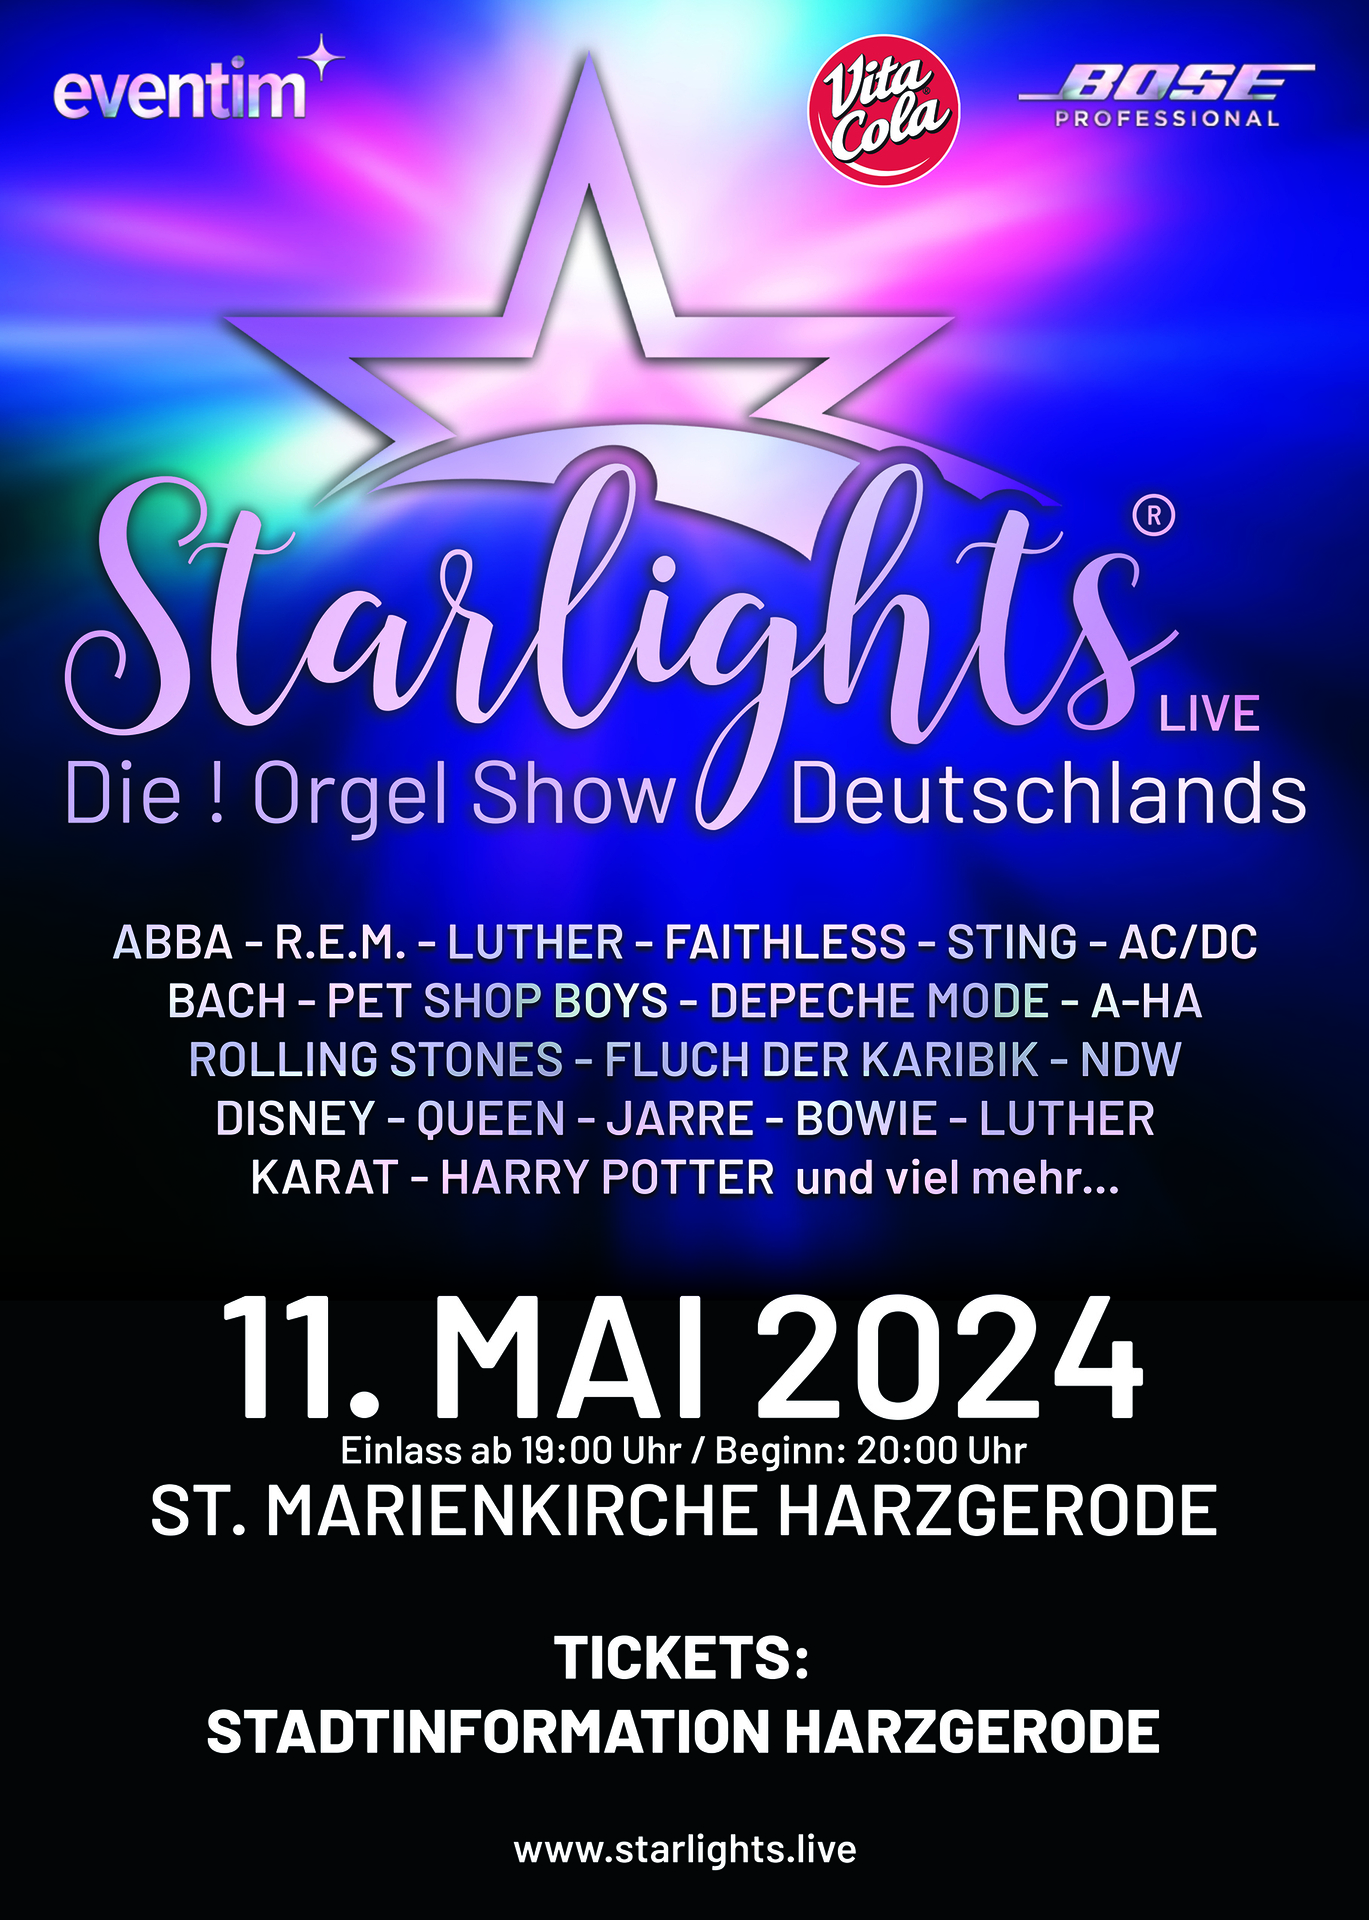 STARLIGHTS LIVE - Die! Orgelshow Deutschlands